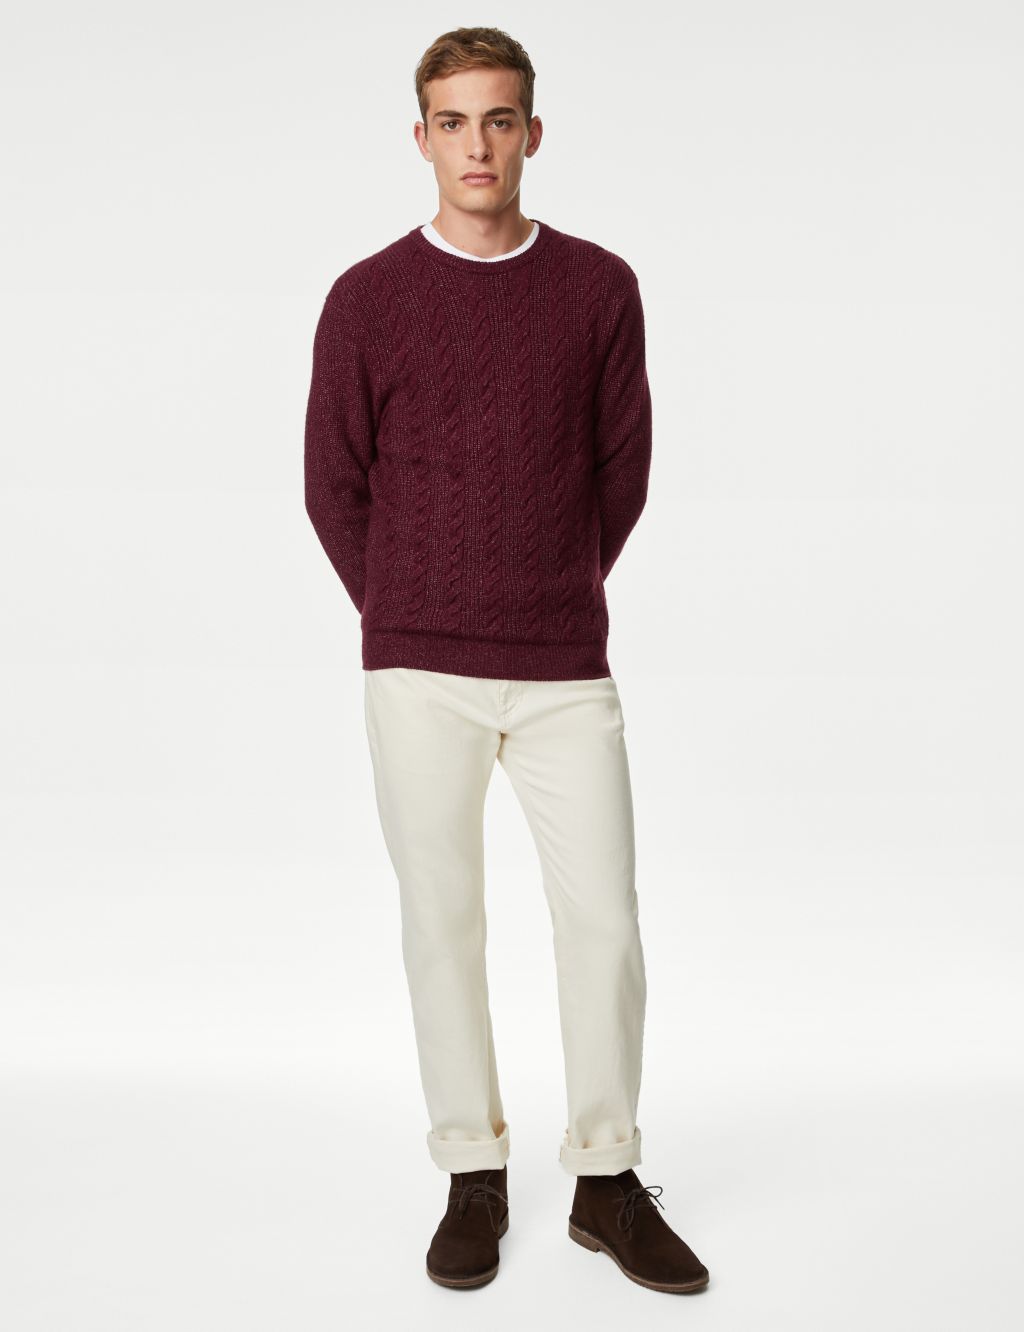 Men's Charles Tyrwhitt Pure Merino Full Zip Through Cardigan - Burgundy Red Size Large Wool